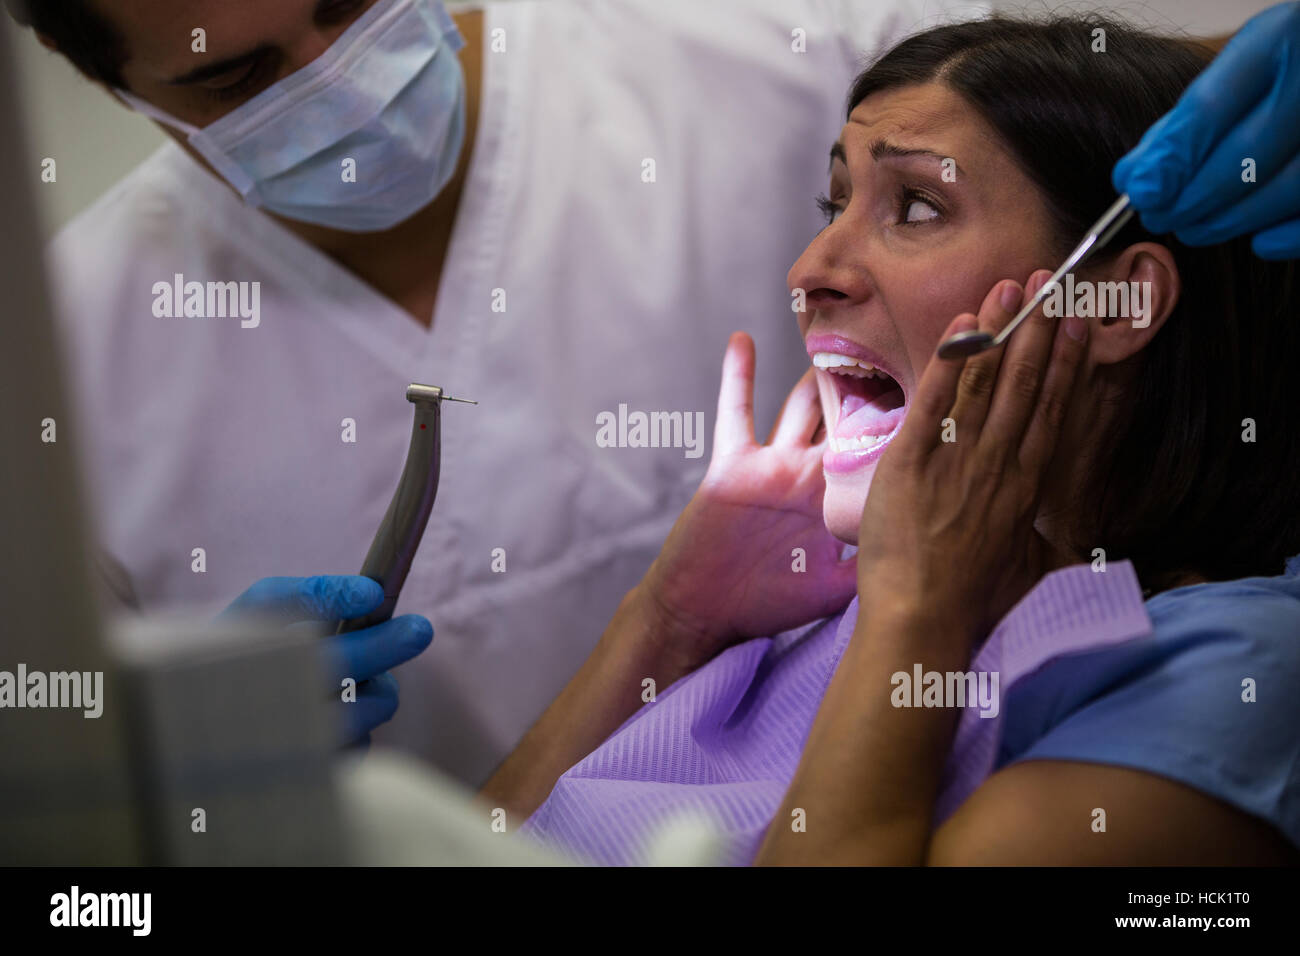 Female patient effrayé pendant un examen dentaire Banque D'Images